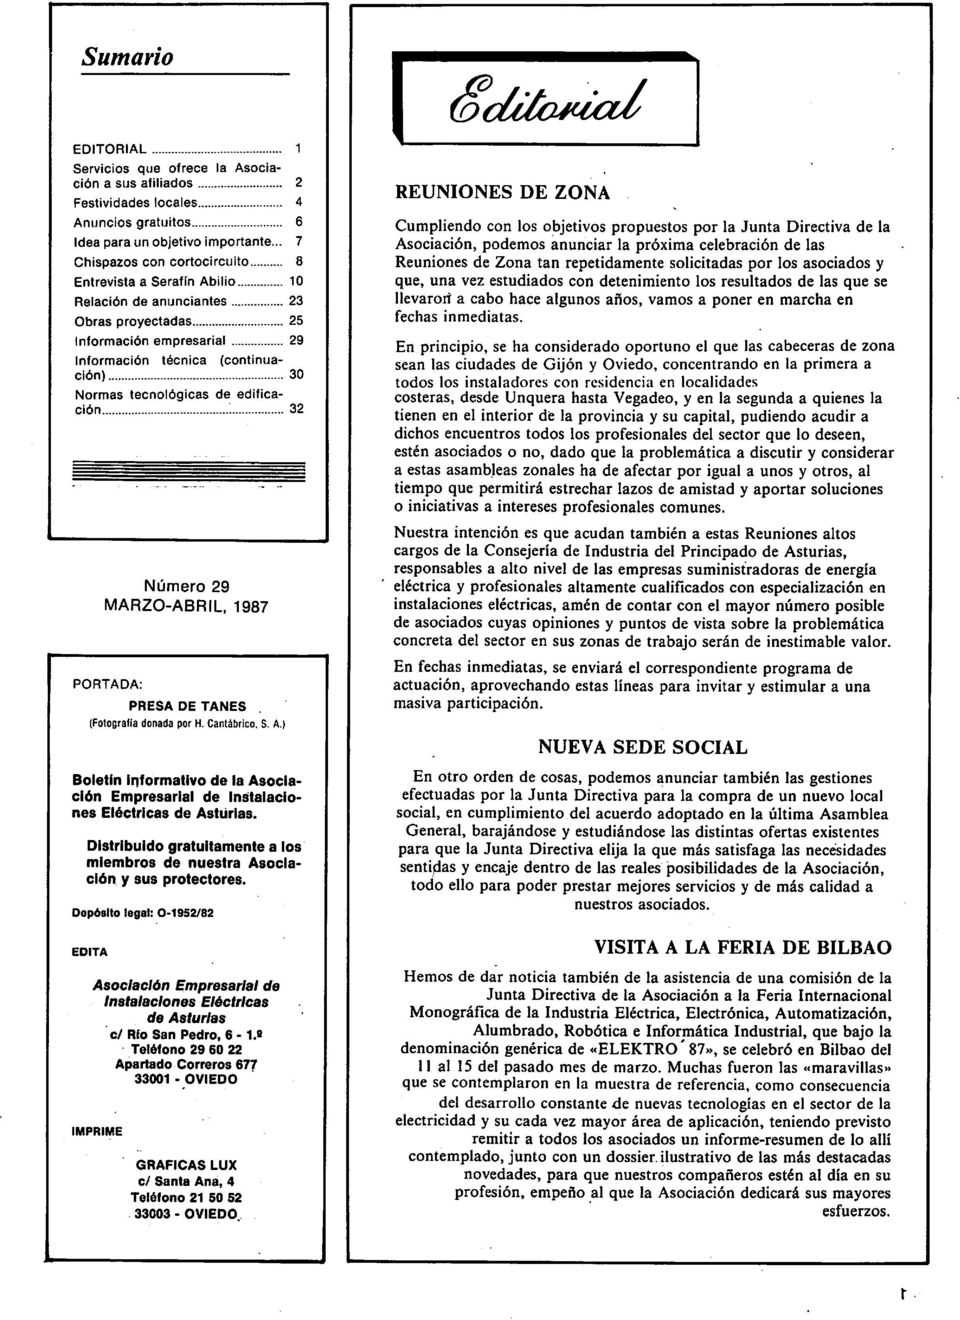 de edifica ción ^ 32 Número 29 MARZO-ABRIL, 1987 PORTADA: PRESA DE TAÑES (Fotografía donada por H. Cantábrico. S. A.